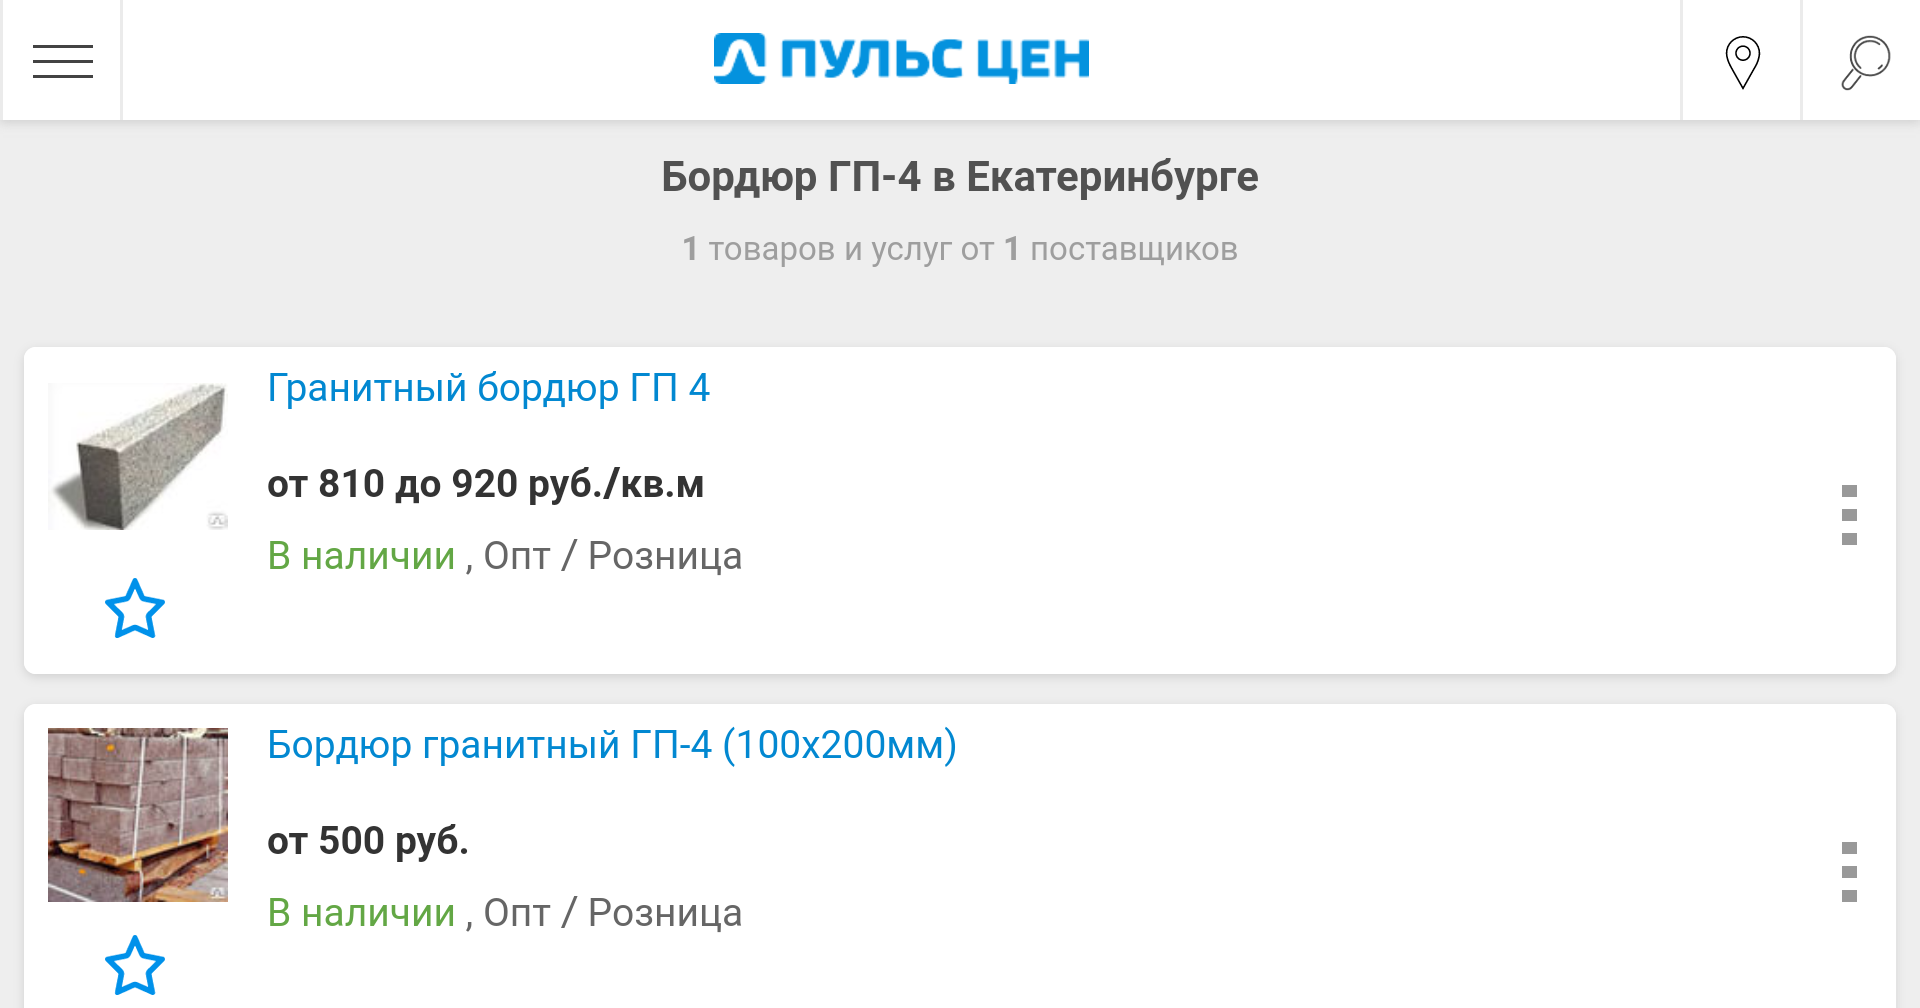 Администрация Екатеринбурга закупает бордюры по завышенной цене?